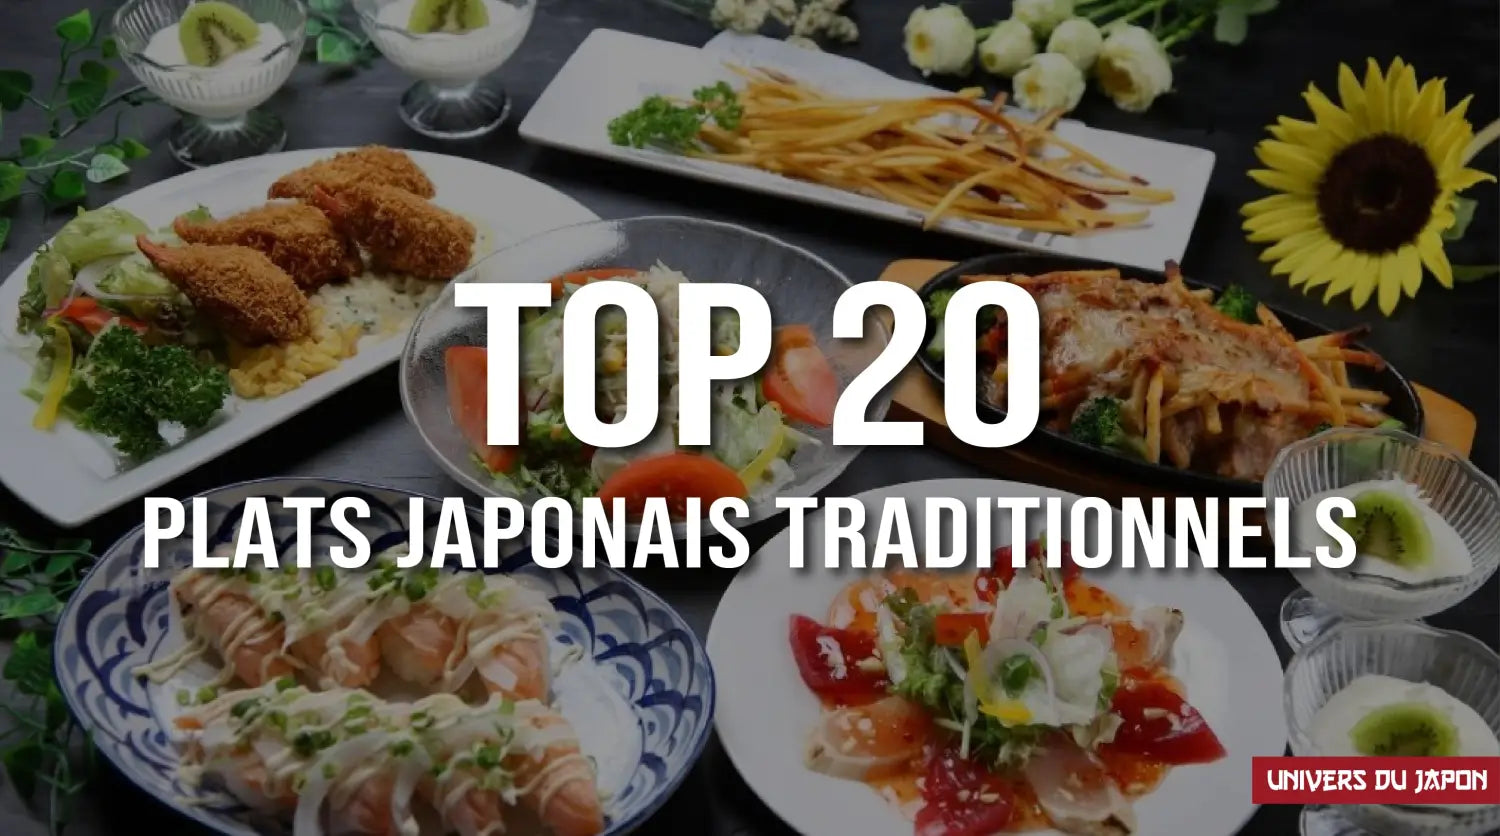 Venez et essayez la cuisine japonaise!